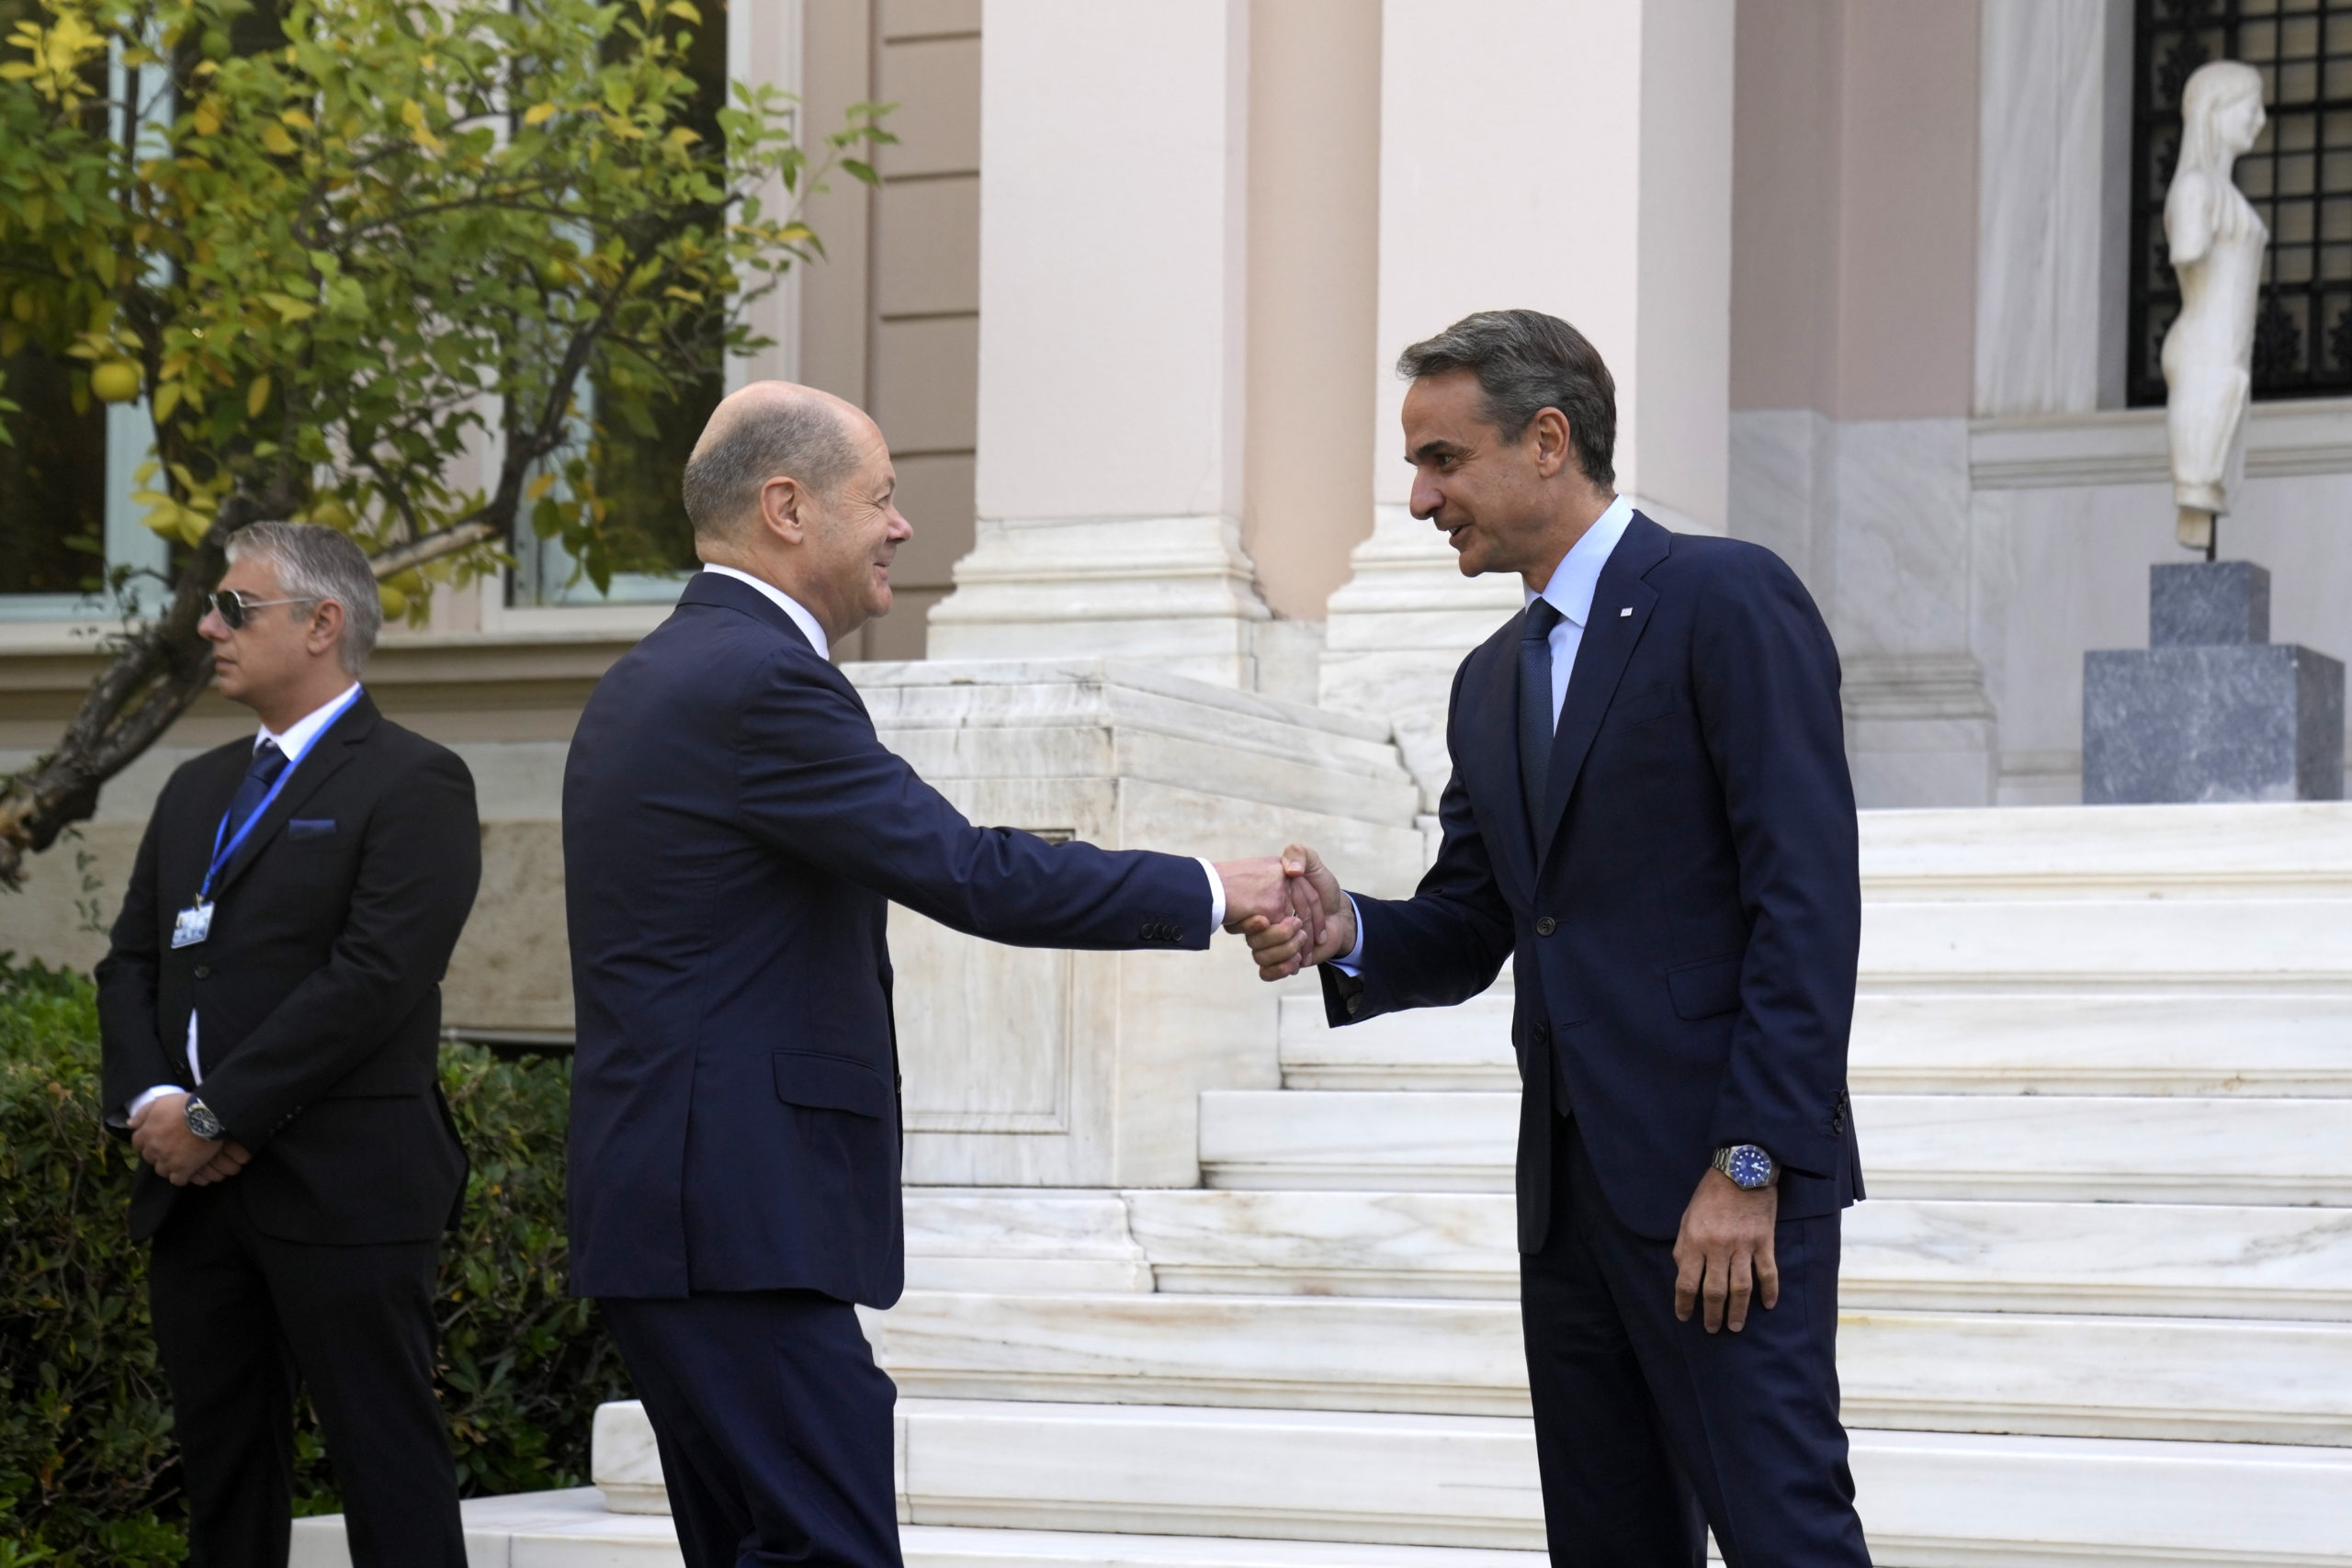 Ιατρίδης για επίσκεψη Σολτς – ελληνογερμανικές σχέσεις: Καλές οι αμυντικές και στρατιωτικές συμφωνίες, αρκεί να τις αξιοποιήσουμε